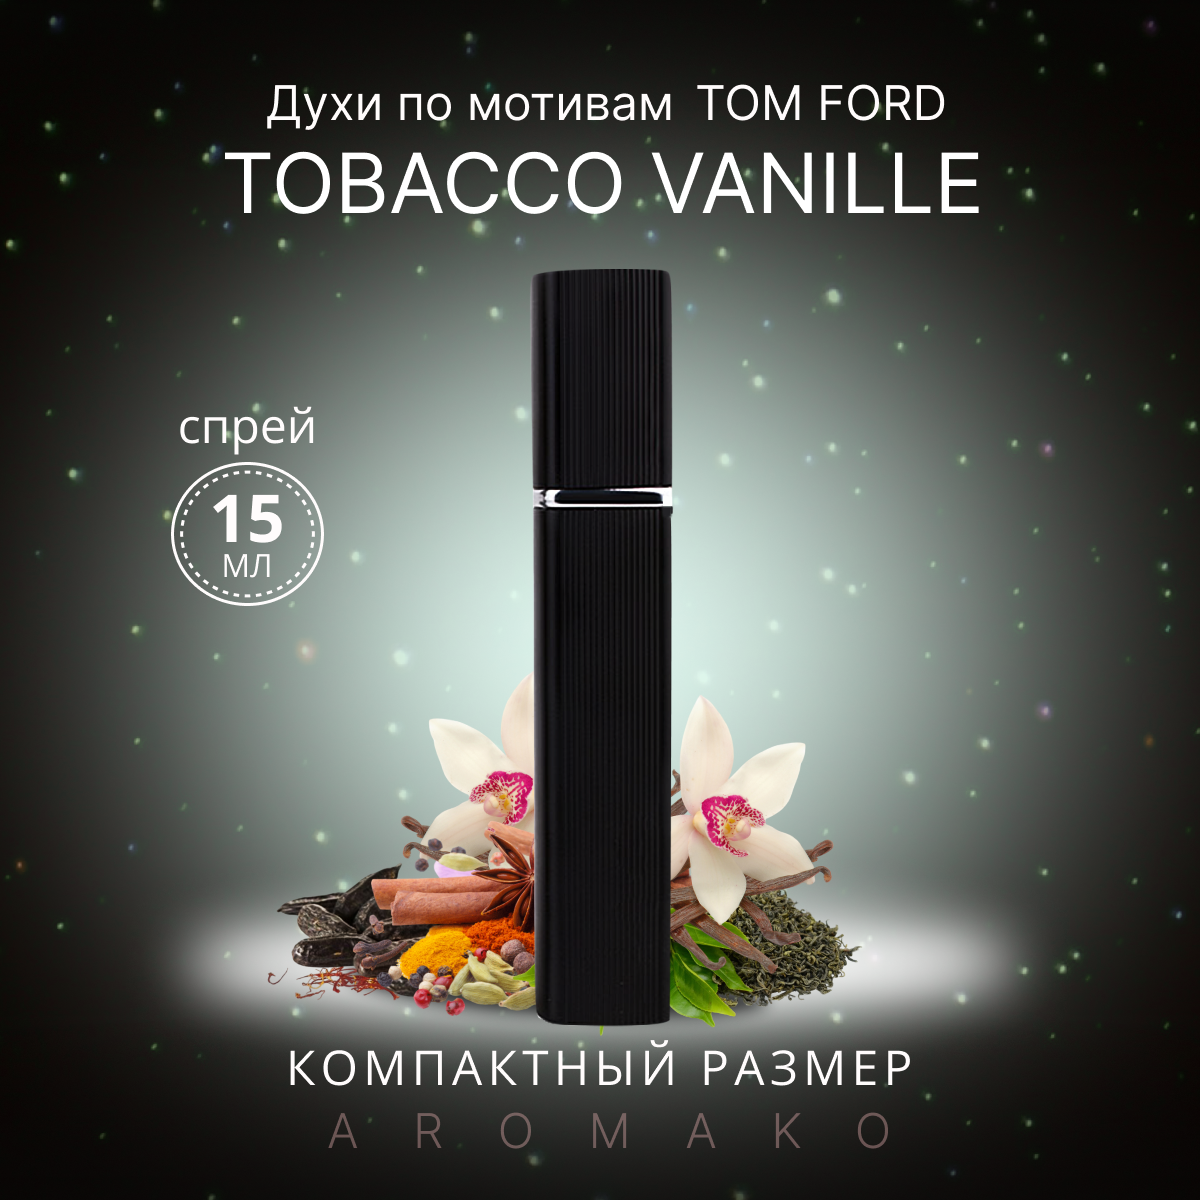 Духи по мотивам Tom Ford "Tobacco Vanille" 15 мл, AROMAKO